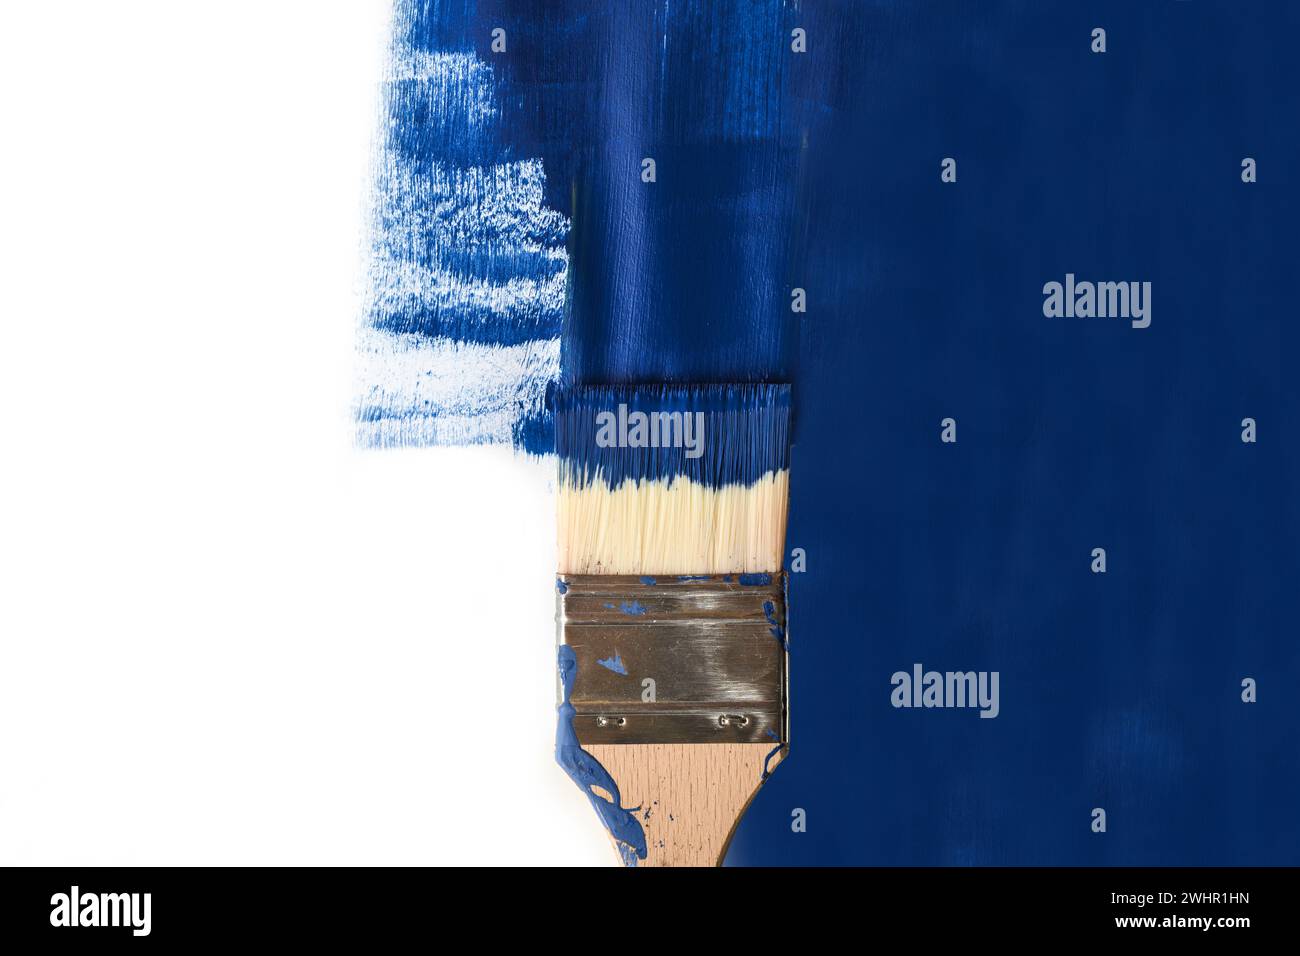 Pinceau peindre une moitié de surface blanche avec la couleur bleue, concept d'influence et de prise de contrôle en cas de points de vue opposés Banque D'Images